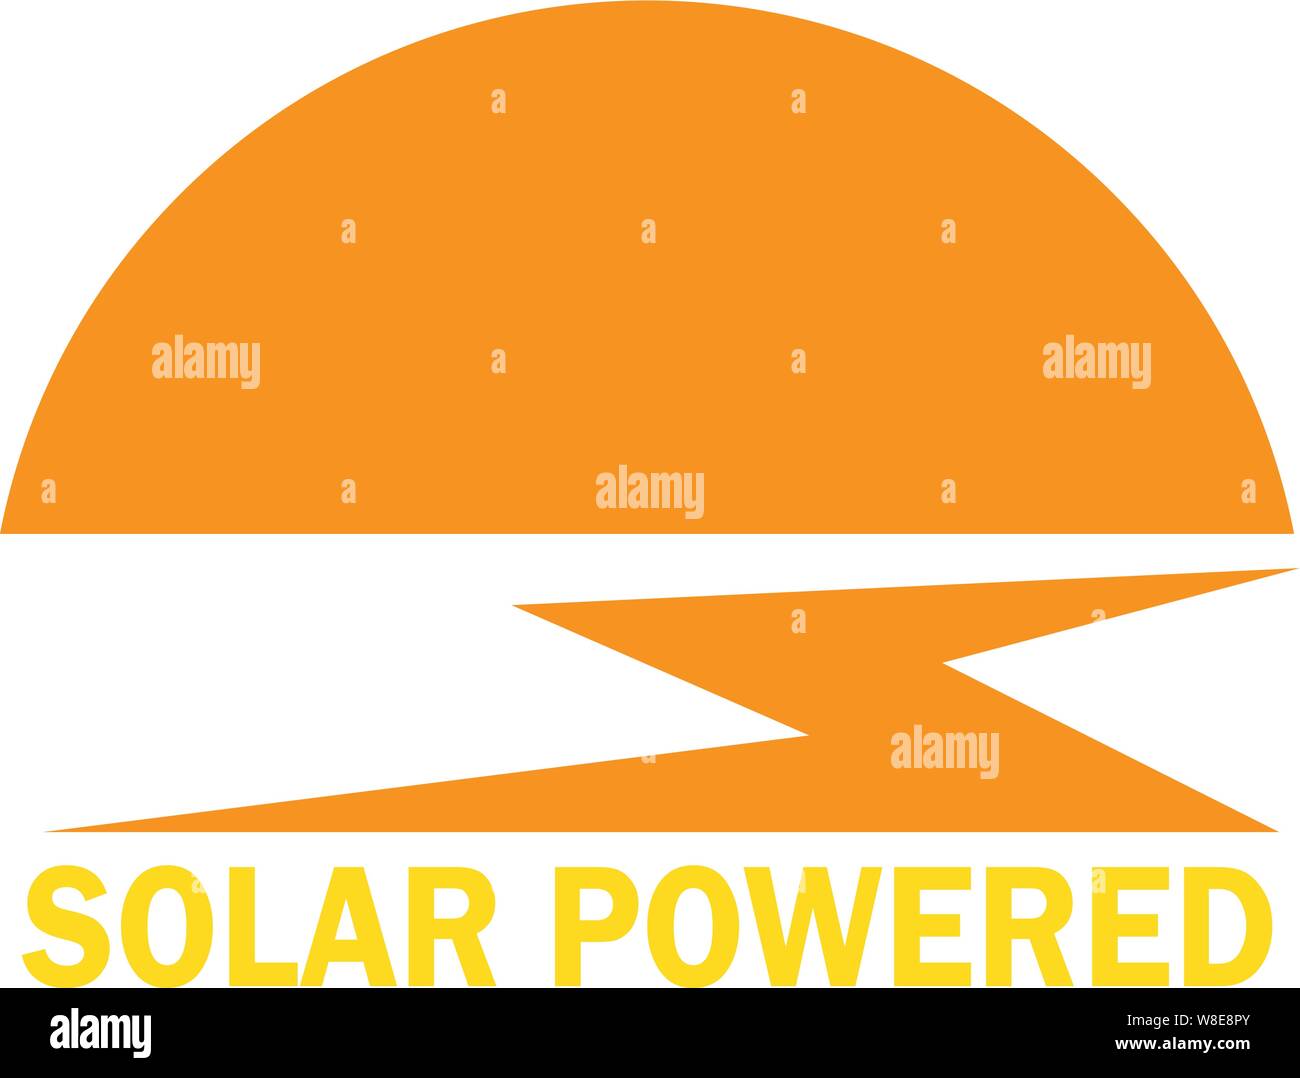 Solar Logo mit Strom versorgt. Die untergehende Sonne und einem Blitz oder Sonnenuntergang beleuchtet Bach/Fluss führt zu olar die Worte "Powered" Stock Vektor